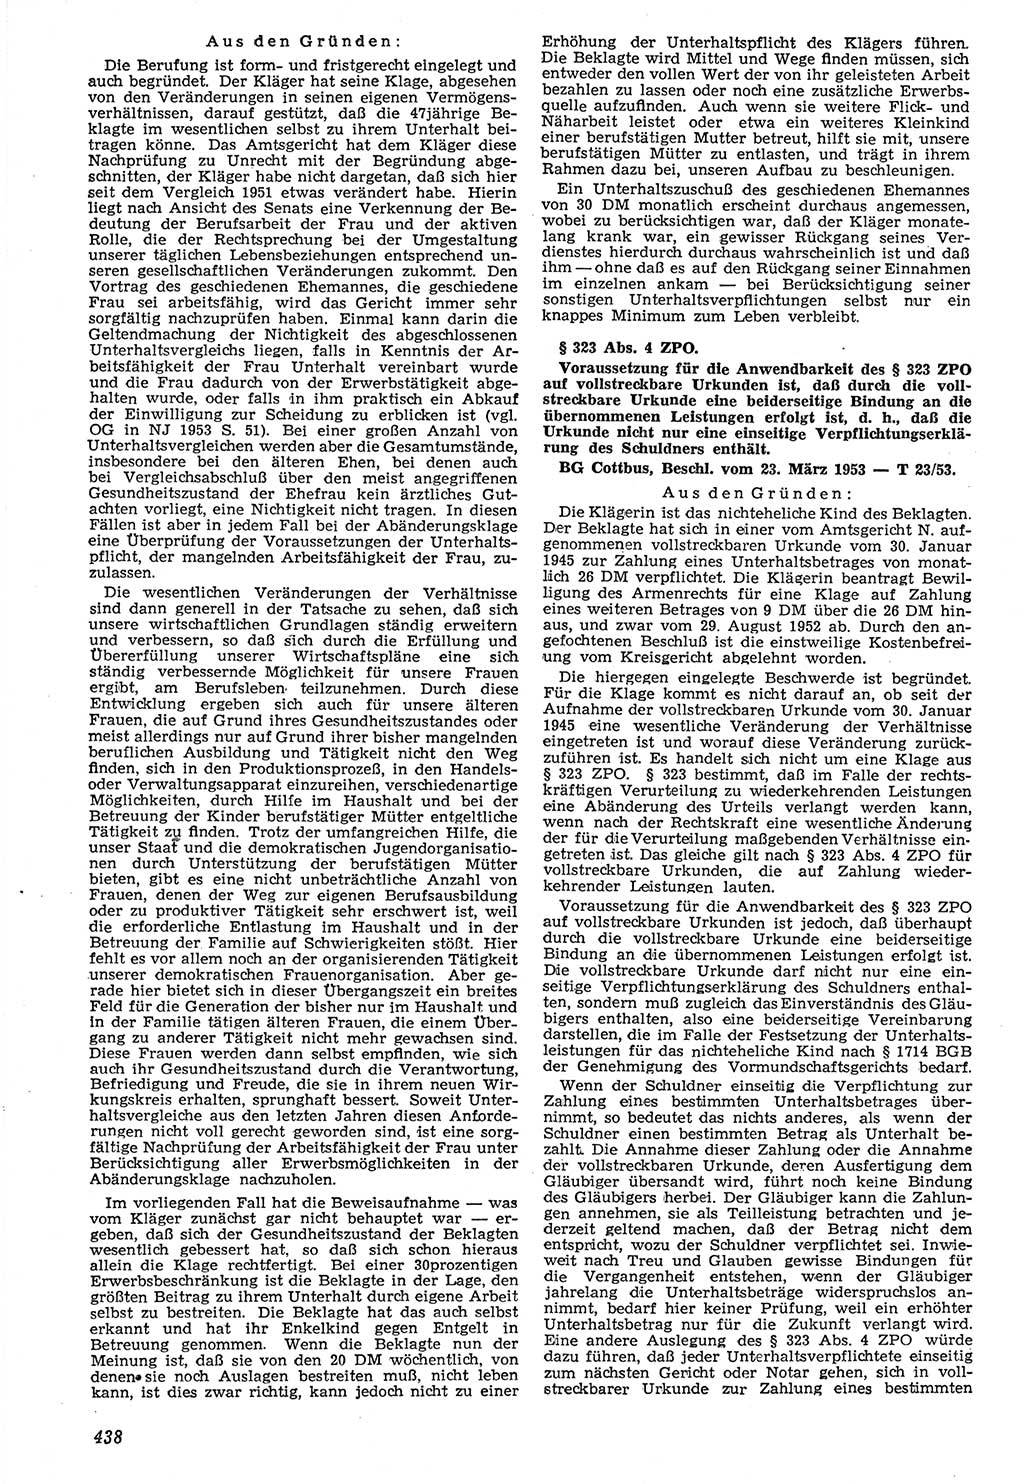 Neue Justiz (NJ), Zeitschrift für Recht und Rechtswissenschaft [Deutsche Demokratische Republik (DDR)], 7. Jahrgang 1953, Seite 438 (NJ DDR 1953, S. 438)